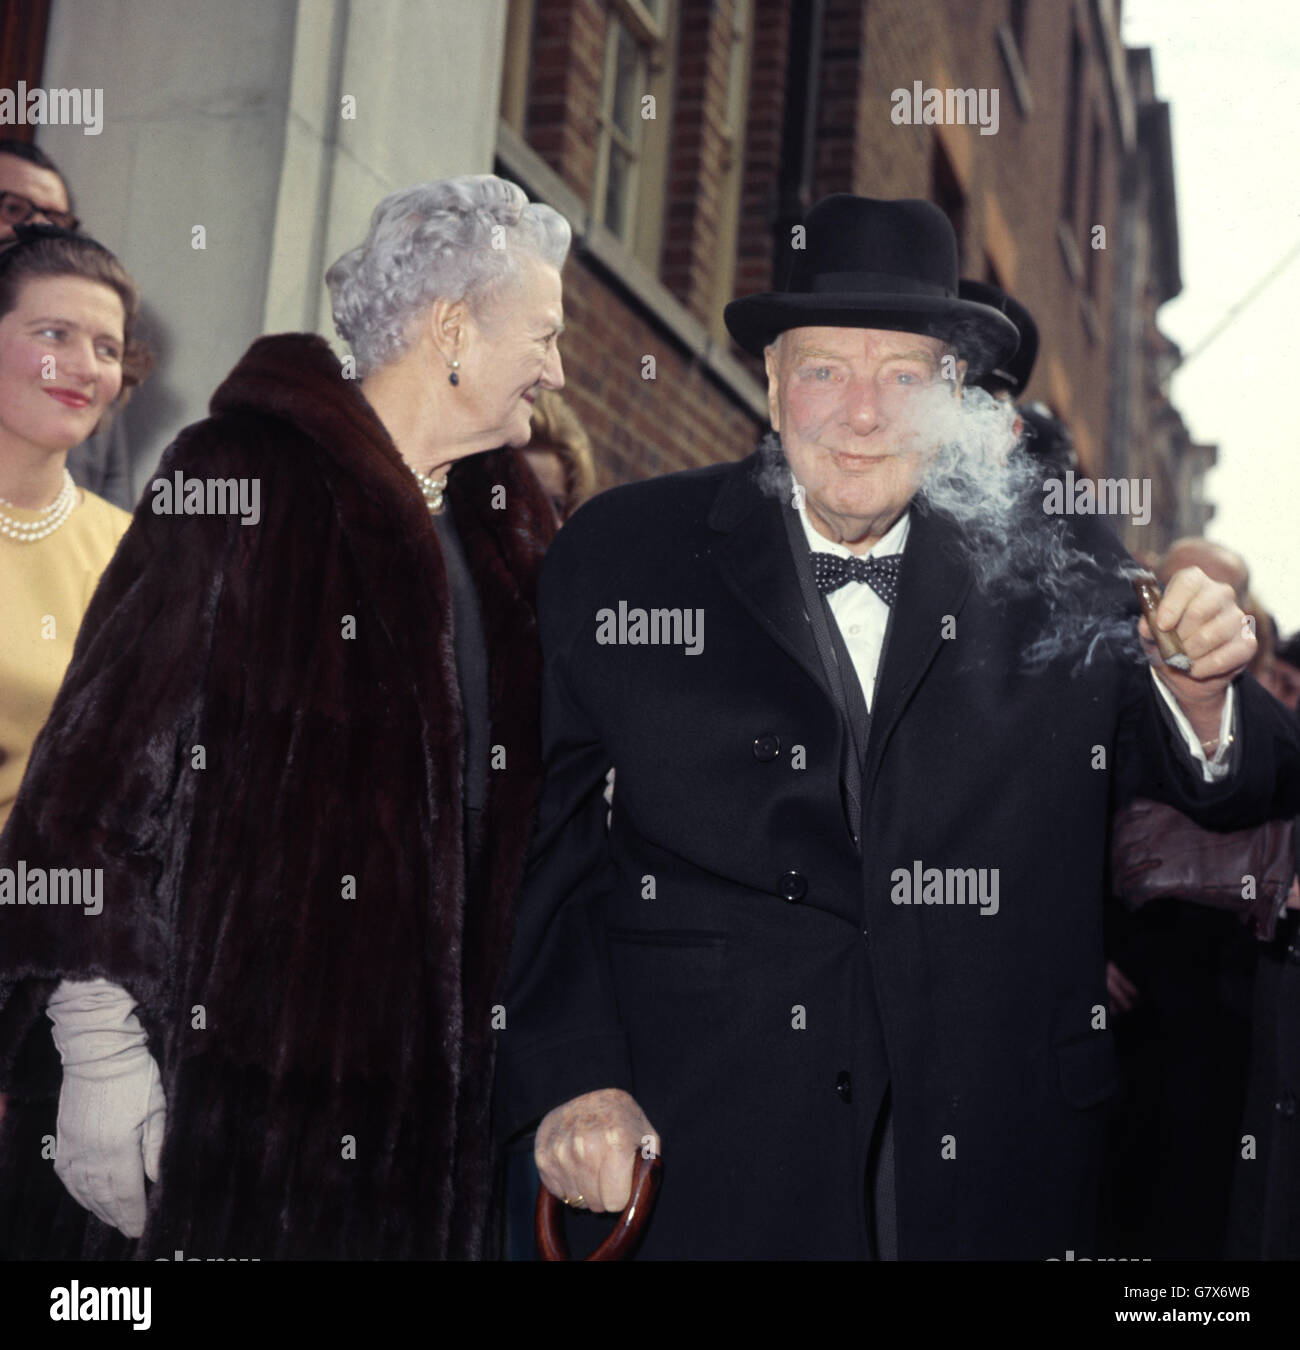 Sir Winston Churchill ha ritratto con sua moglie Lady Churchill mentre celebrano il 78° compleanno di Lady Churchill. Foto Stock